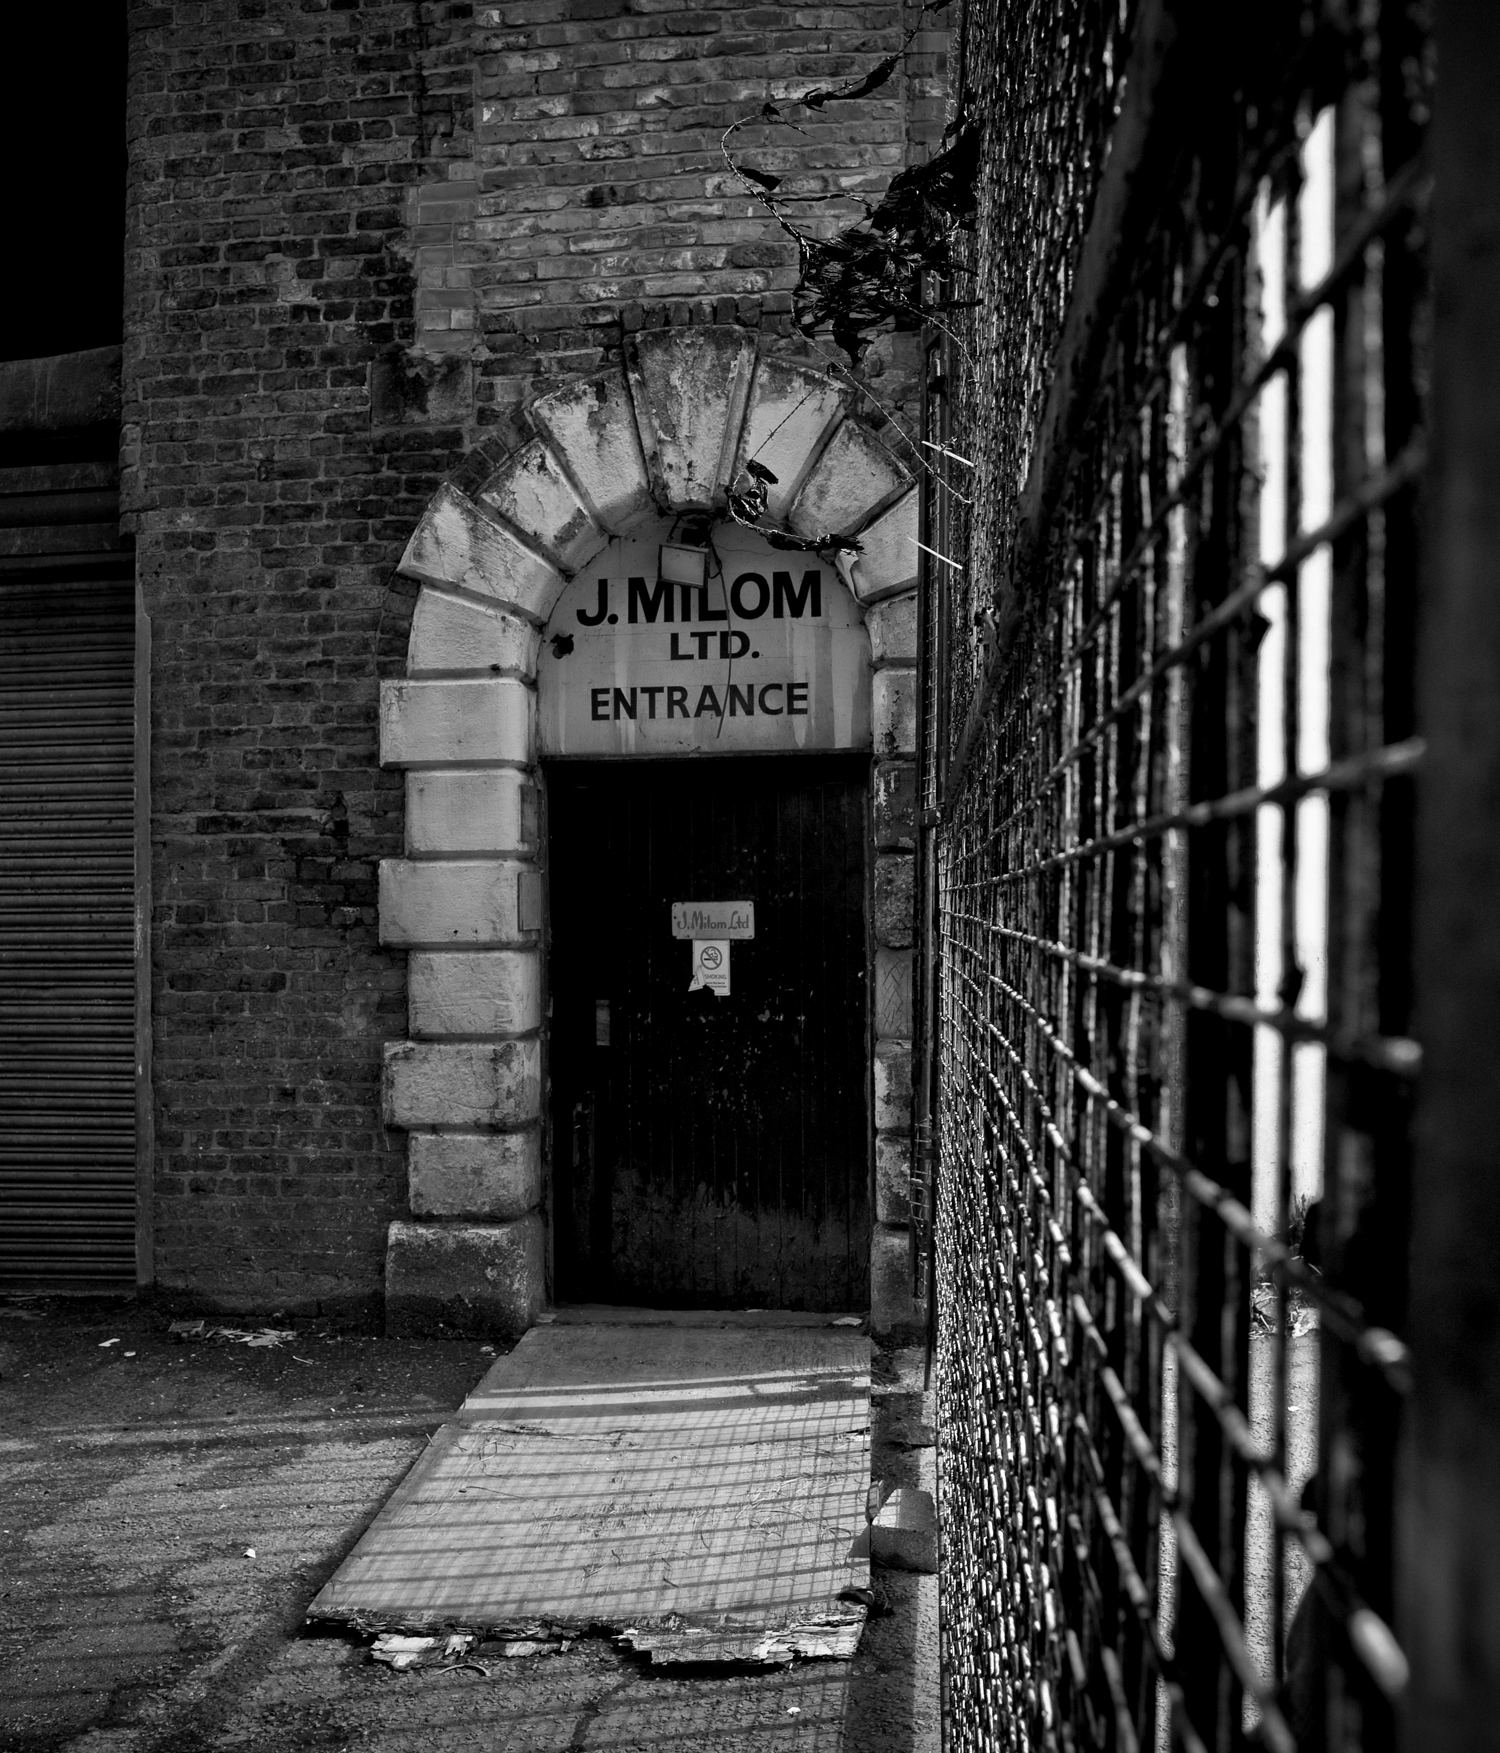  J Milon, Judo suit suppliers, opposite Strangeways Prison, Manchester. 